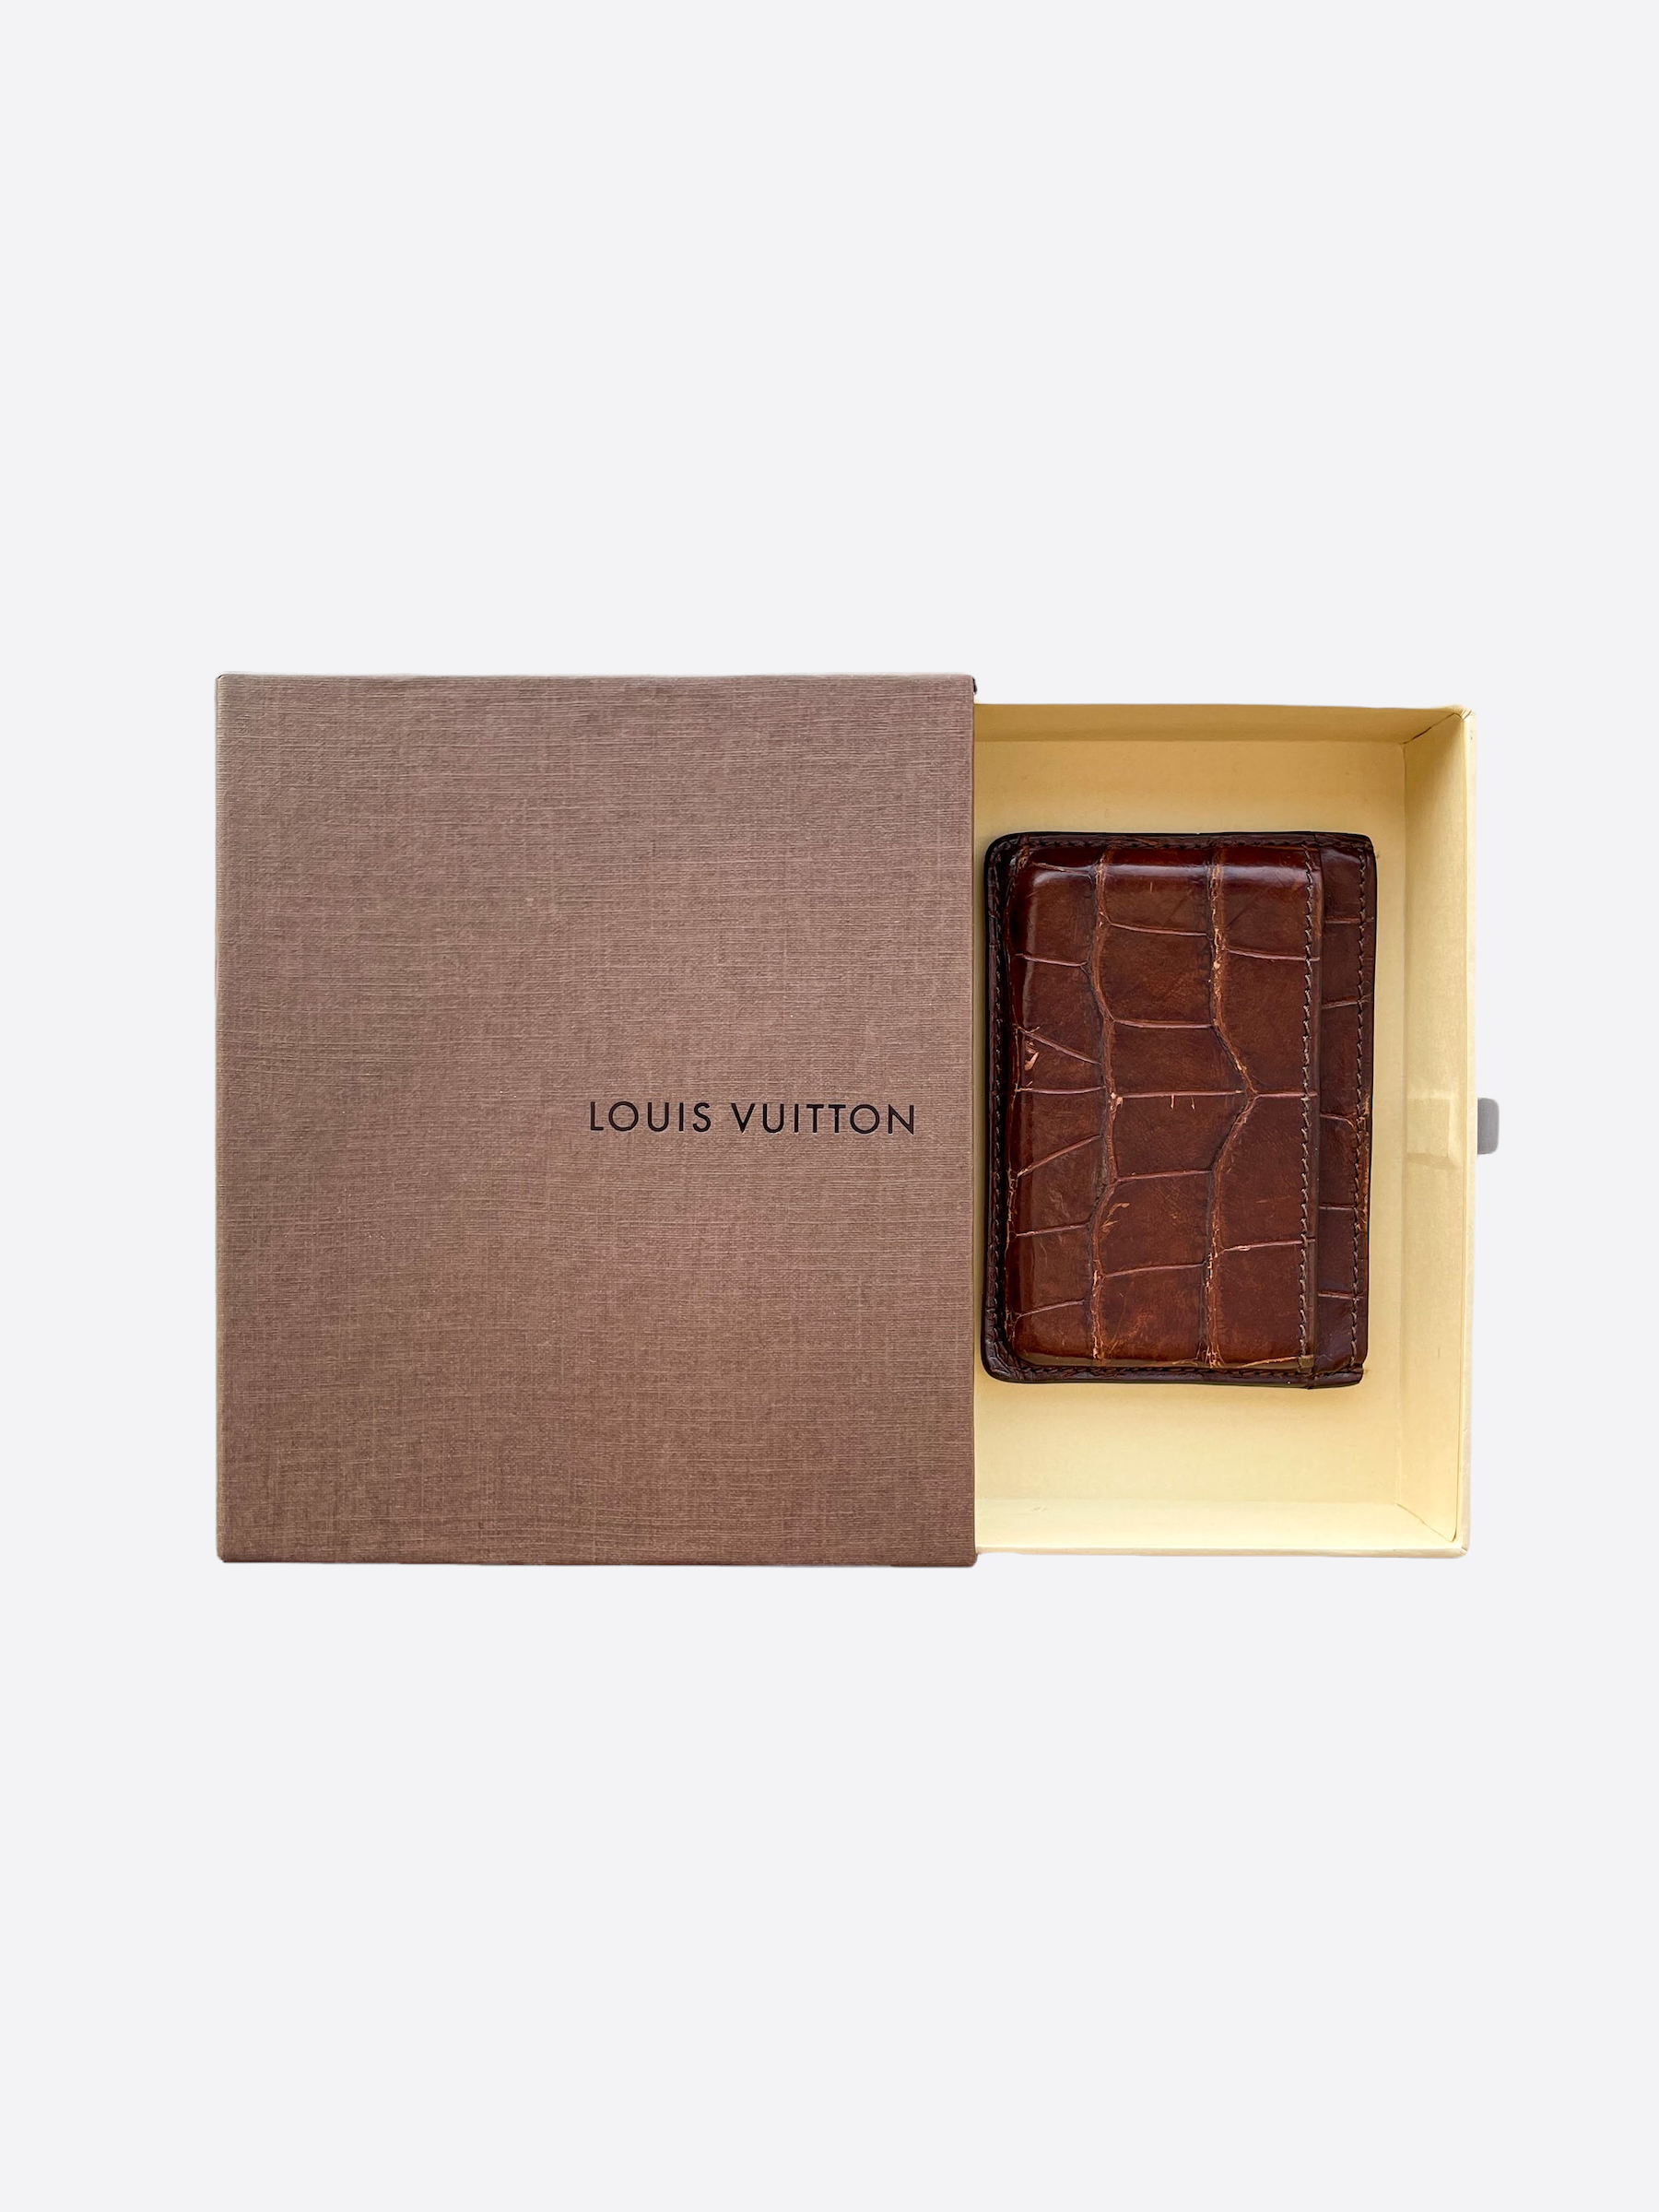 Sold at Auction: Louis Vuitton, Louis Vuitton Cargo Alligator